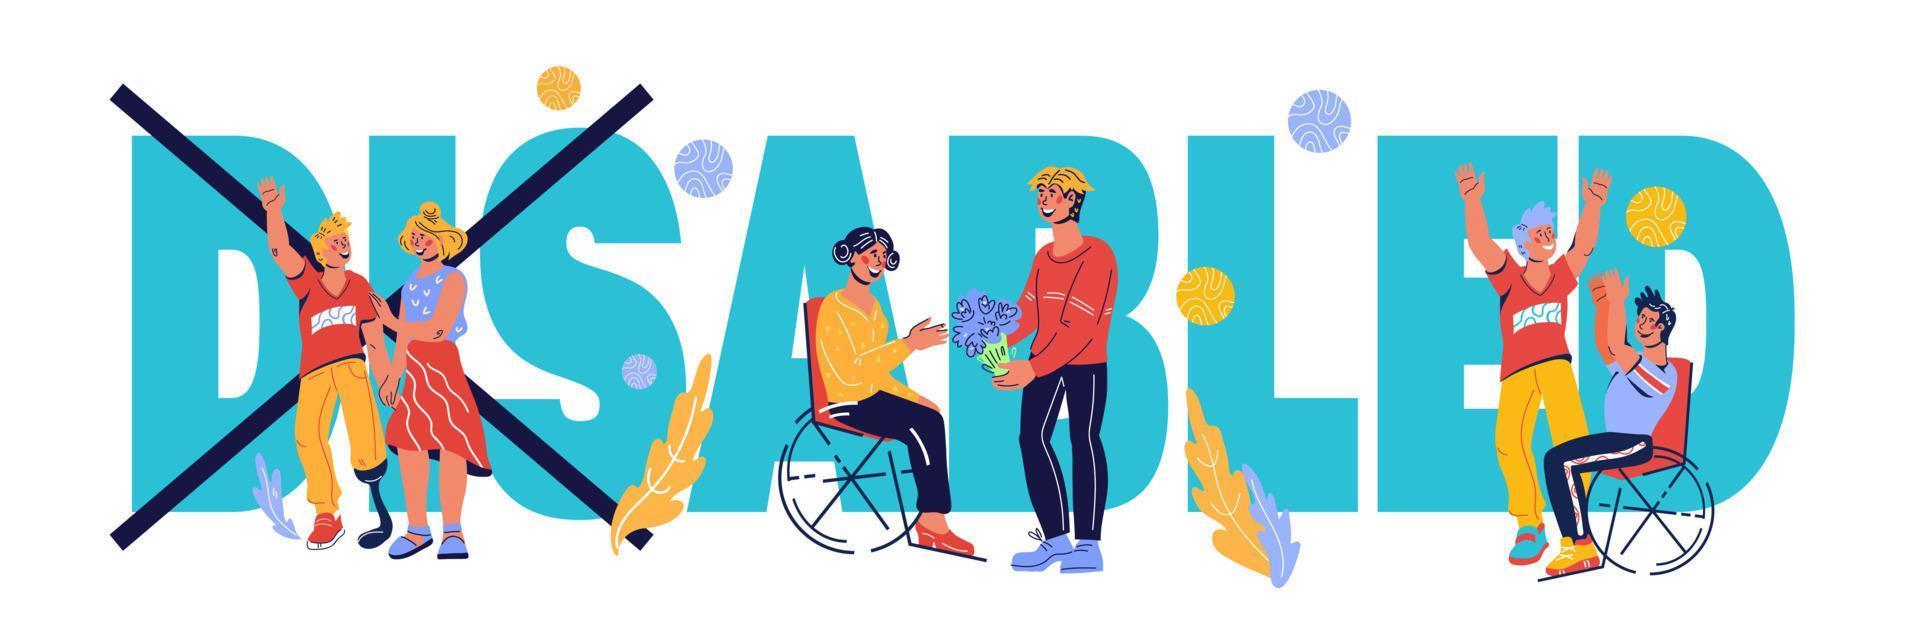 banner voor invaliditeitsdag met invaliden die een actief leven leiden. medische bijstand en toegankelijkheid voor mensen met beperkte mobiliteit en lichamelijke ongeschiktheid. cartoon vectorillustratie. vector